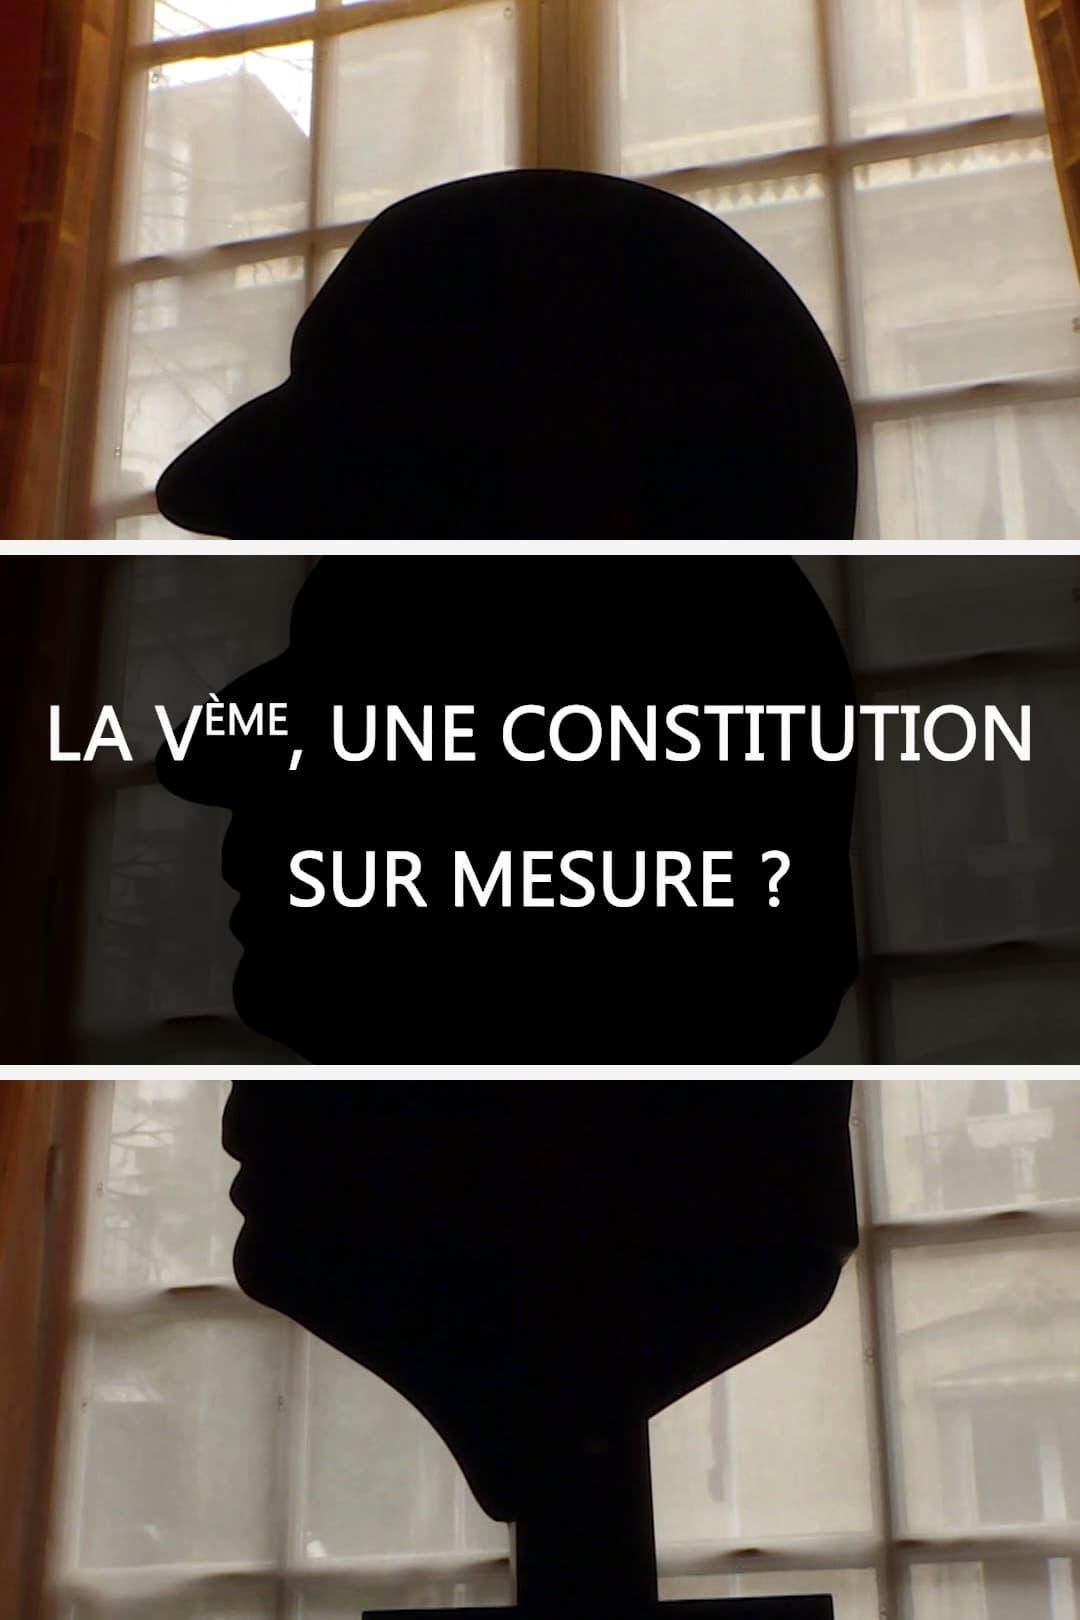 La Ve, une constitution sur mesure ? poster